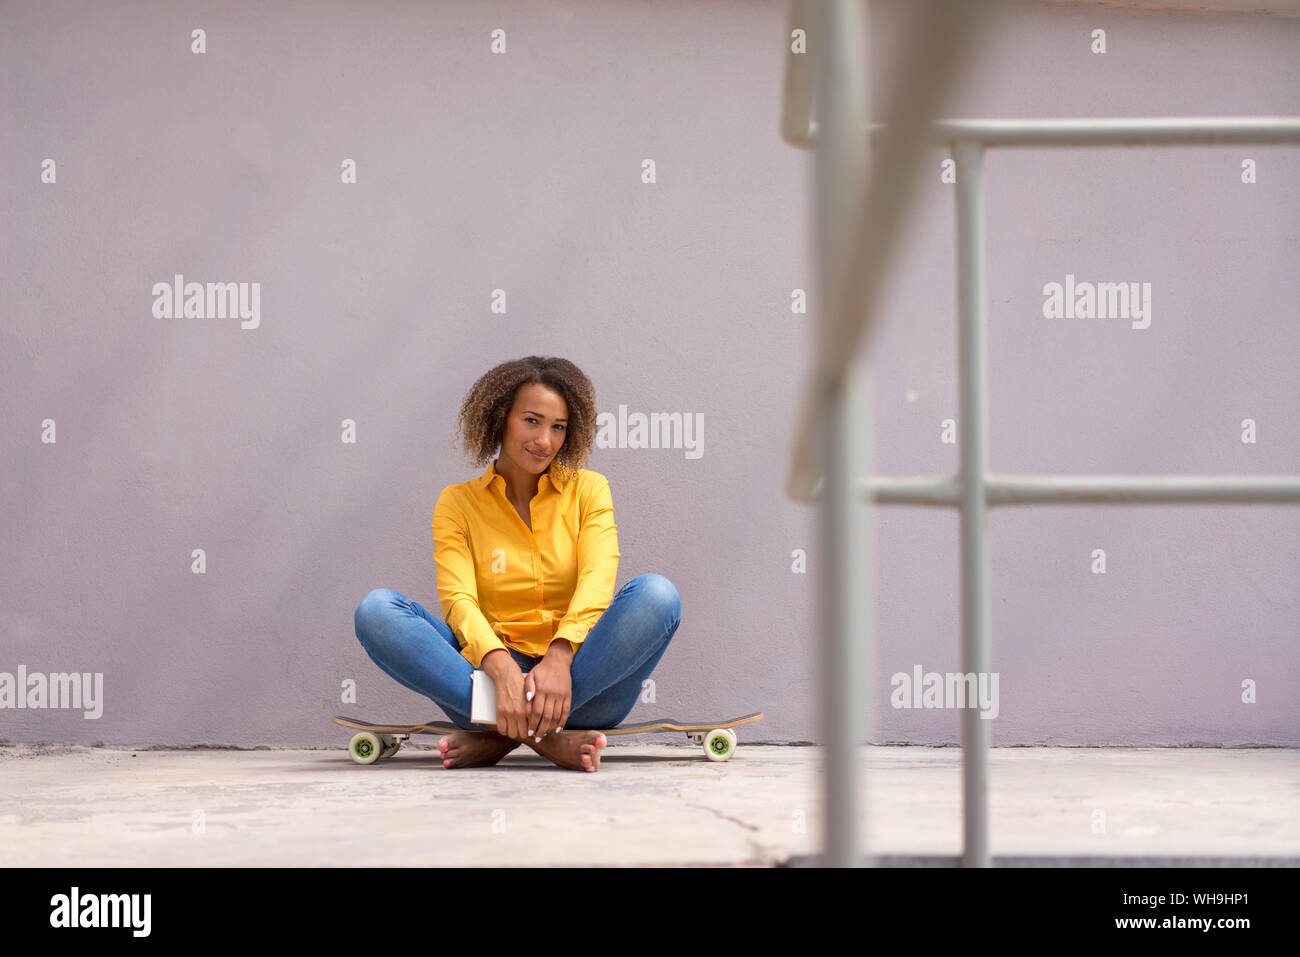 Portrait de jeune femme assise livre pieds nus sur skateboard Banque D'Images